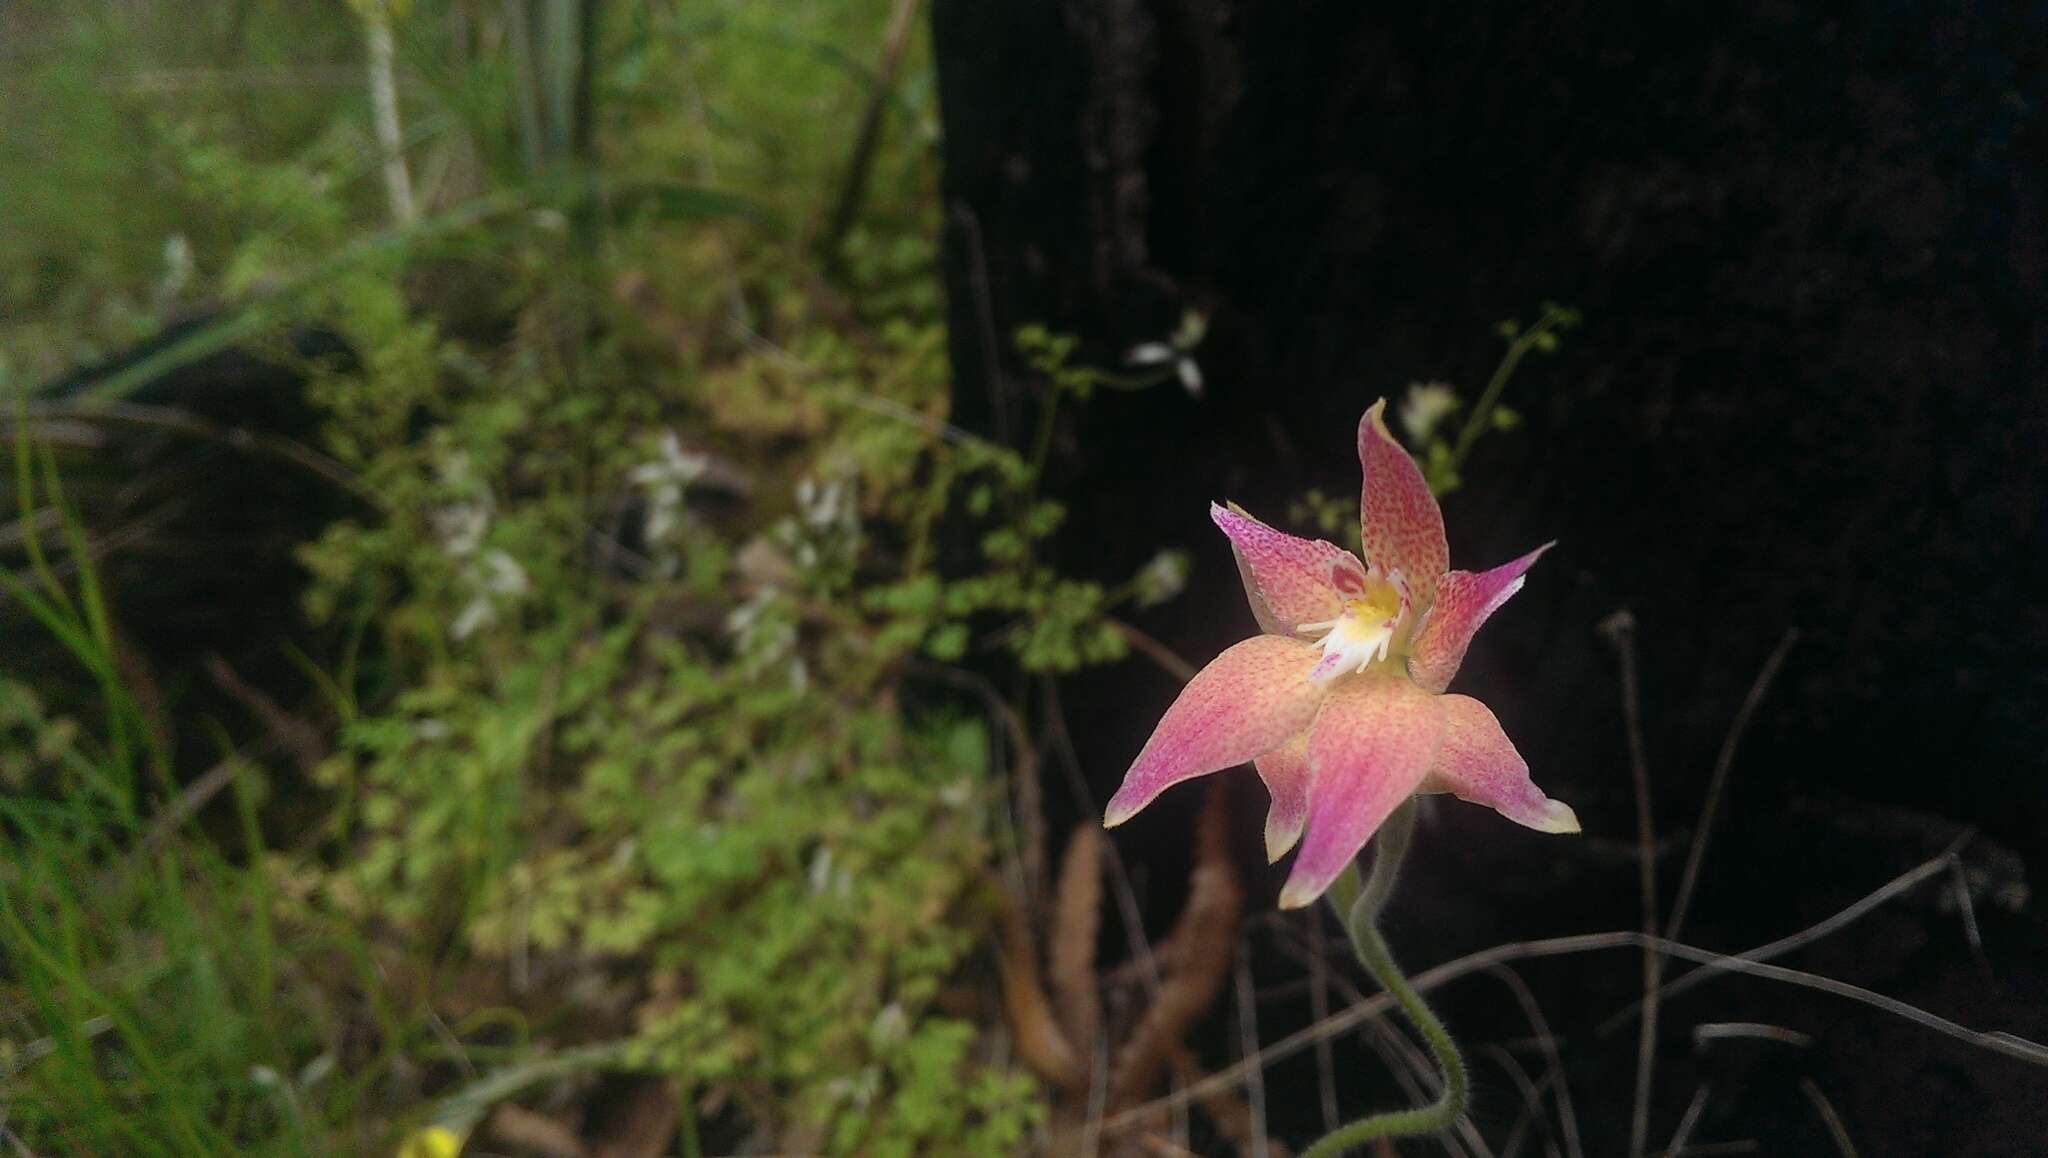 Image of Caladenia spectabilis Hopper & A. P. Br.